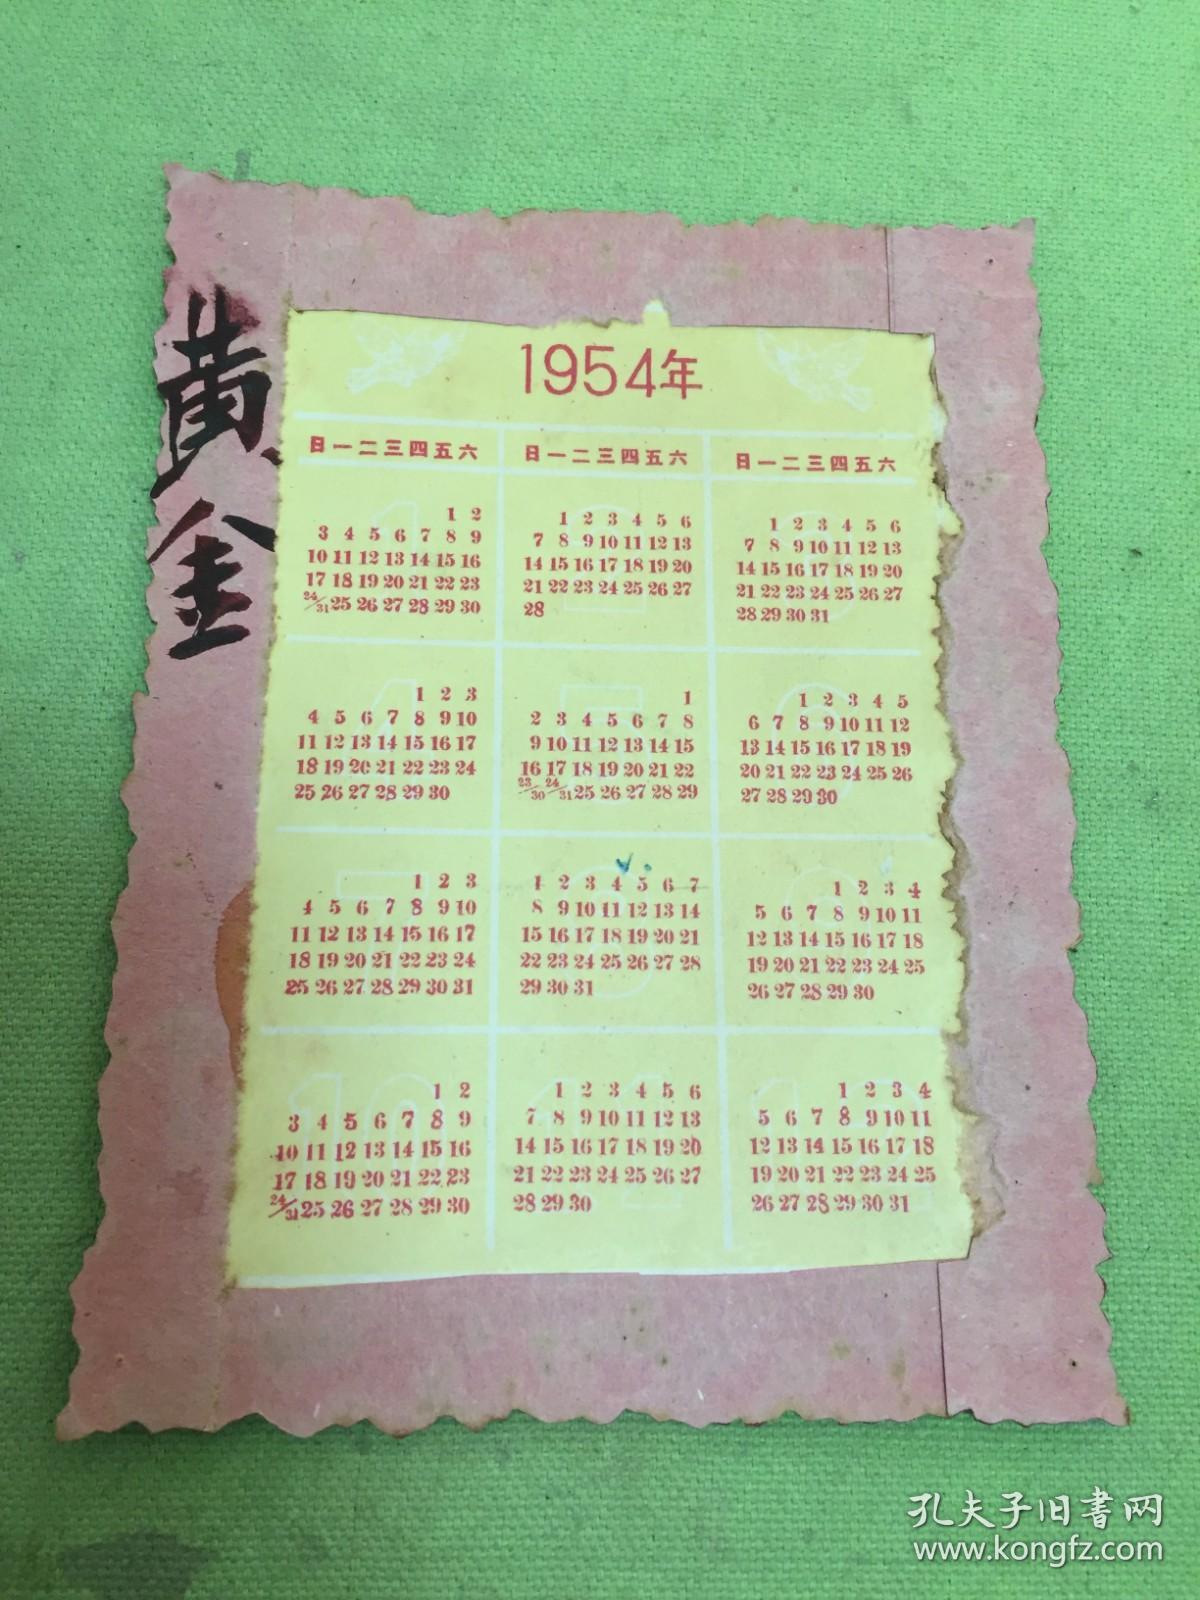 1954年年历片:送给中国人民解放军老大哥